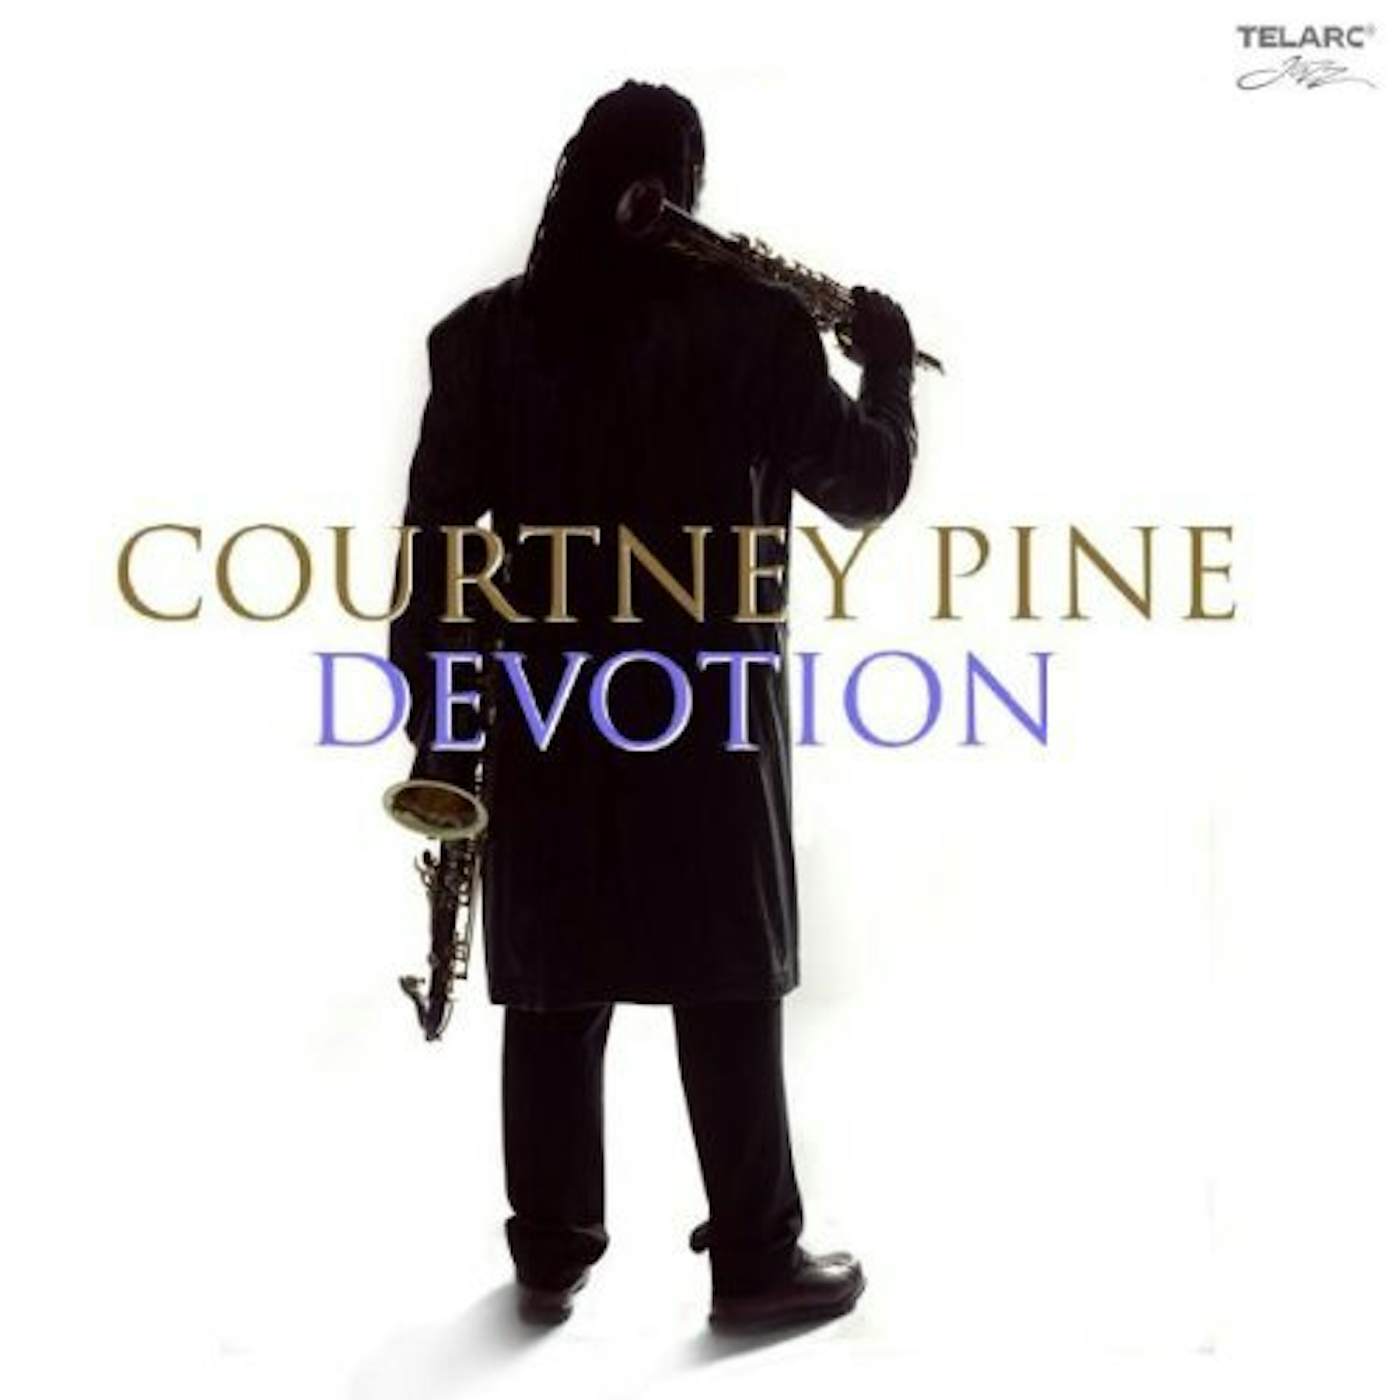 Courtney Pine DEVOTION CD